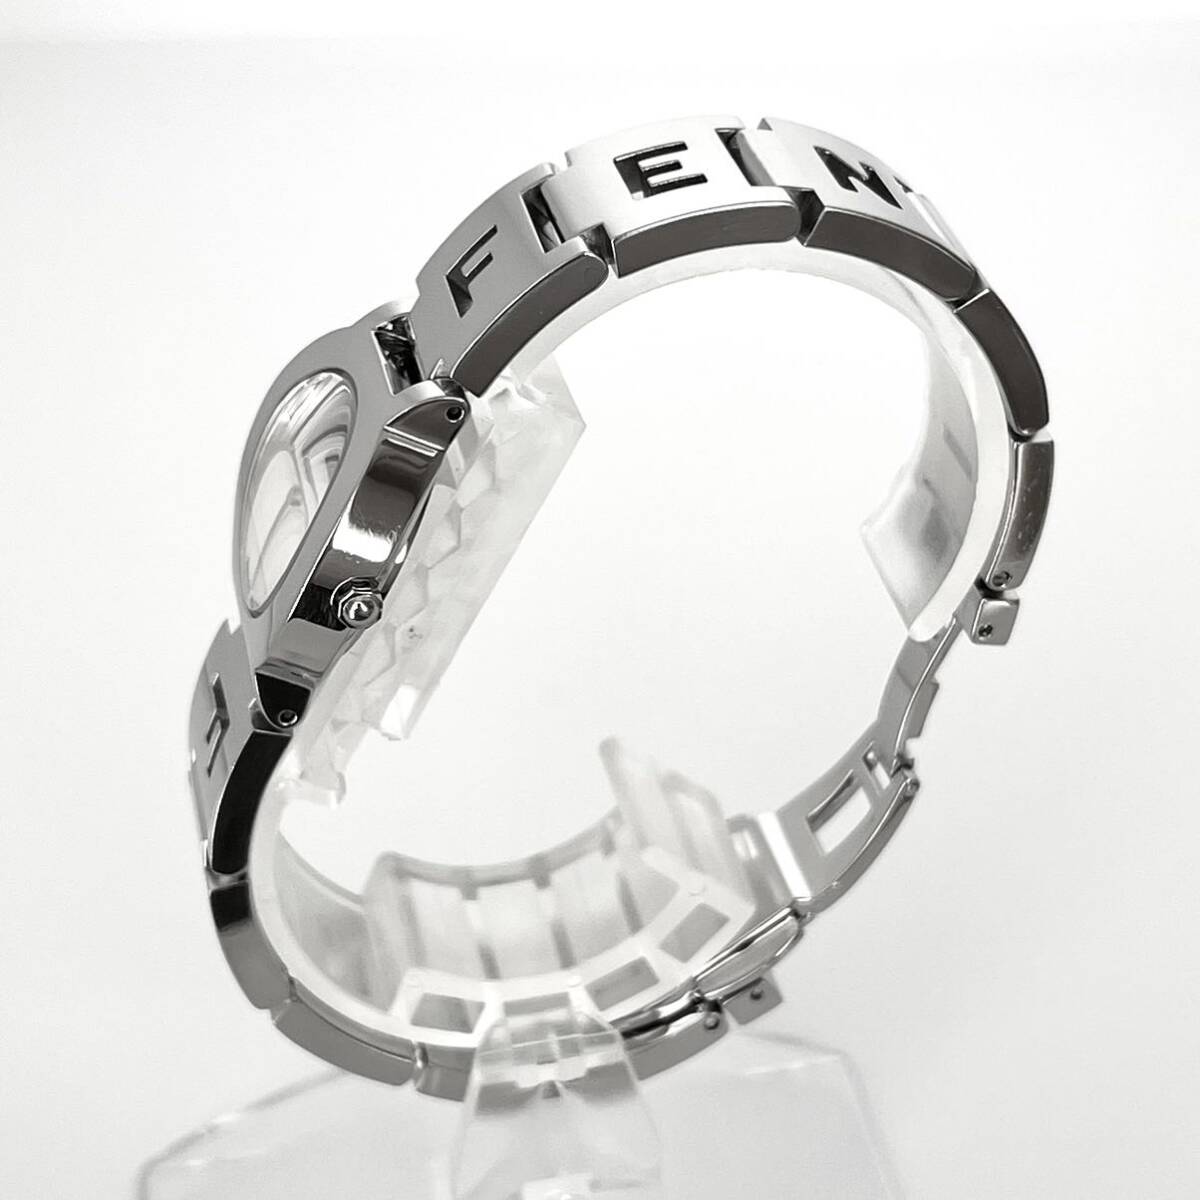 [ работа ] отполирован Fendi FENDI 3050L женские наручные часы прекрасный товар батарейка новый товар белый циферблат s1605